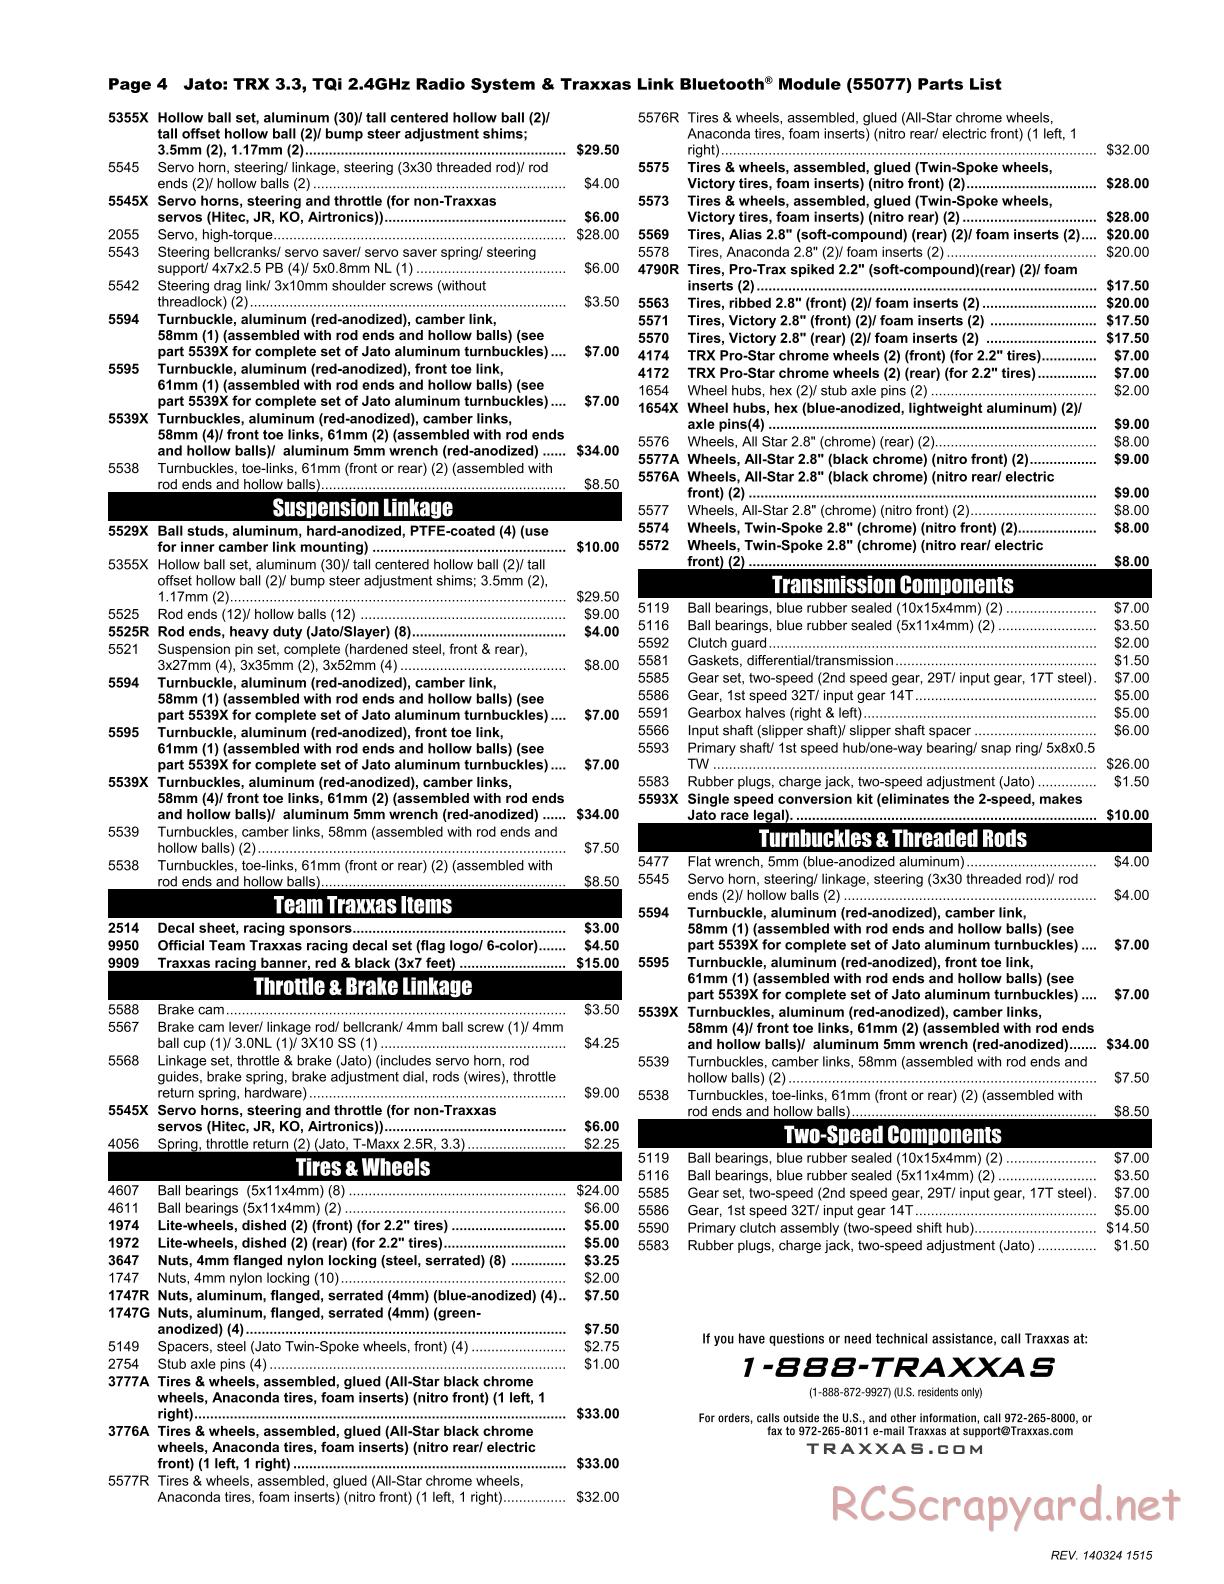 Traxxas - Jato 3.3 (2014) - Parts List - Page 4